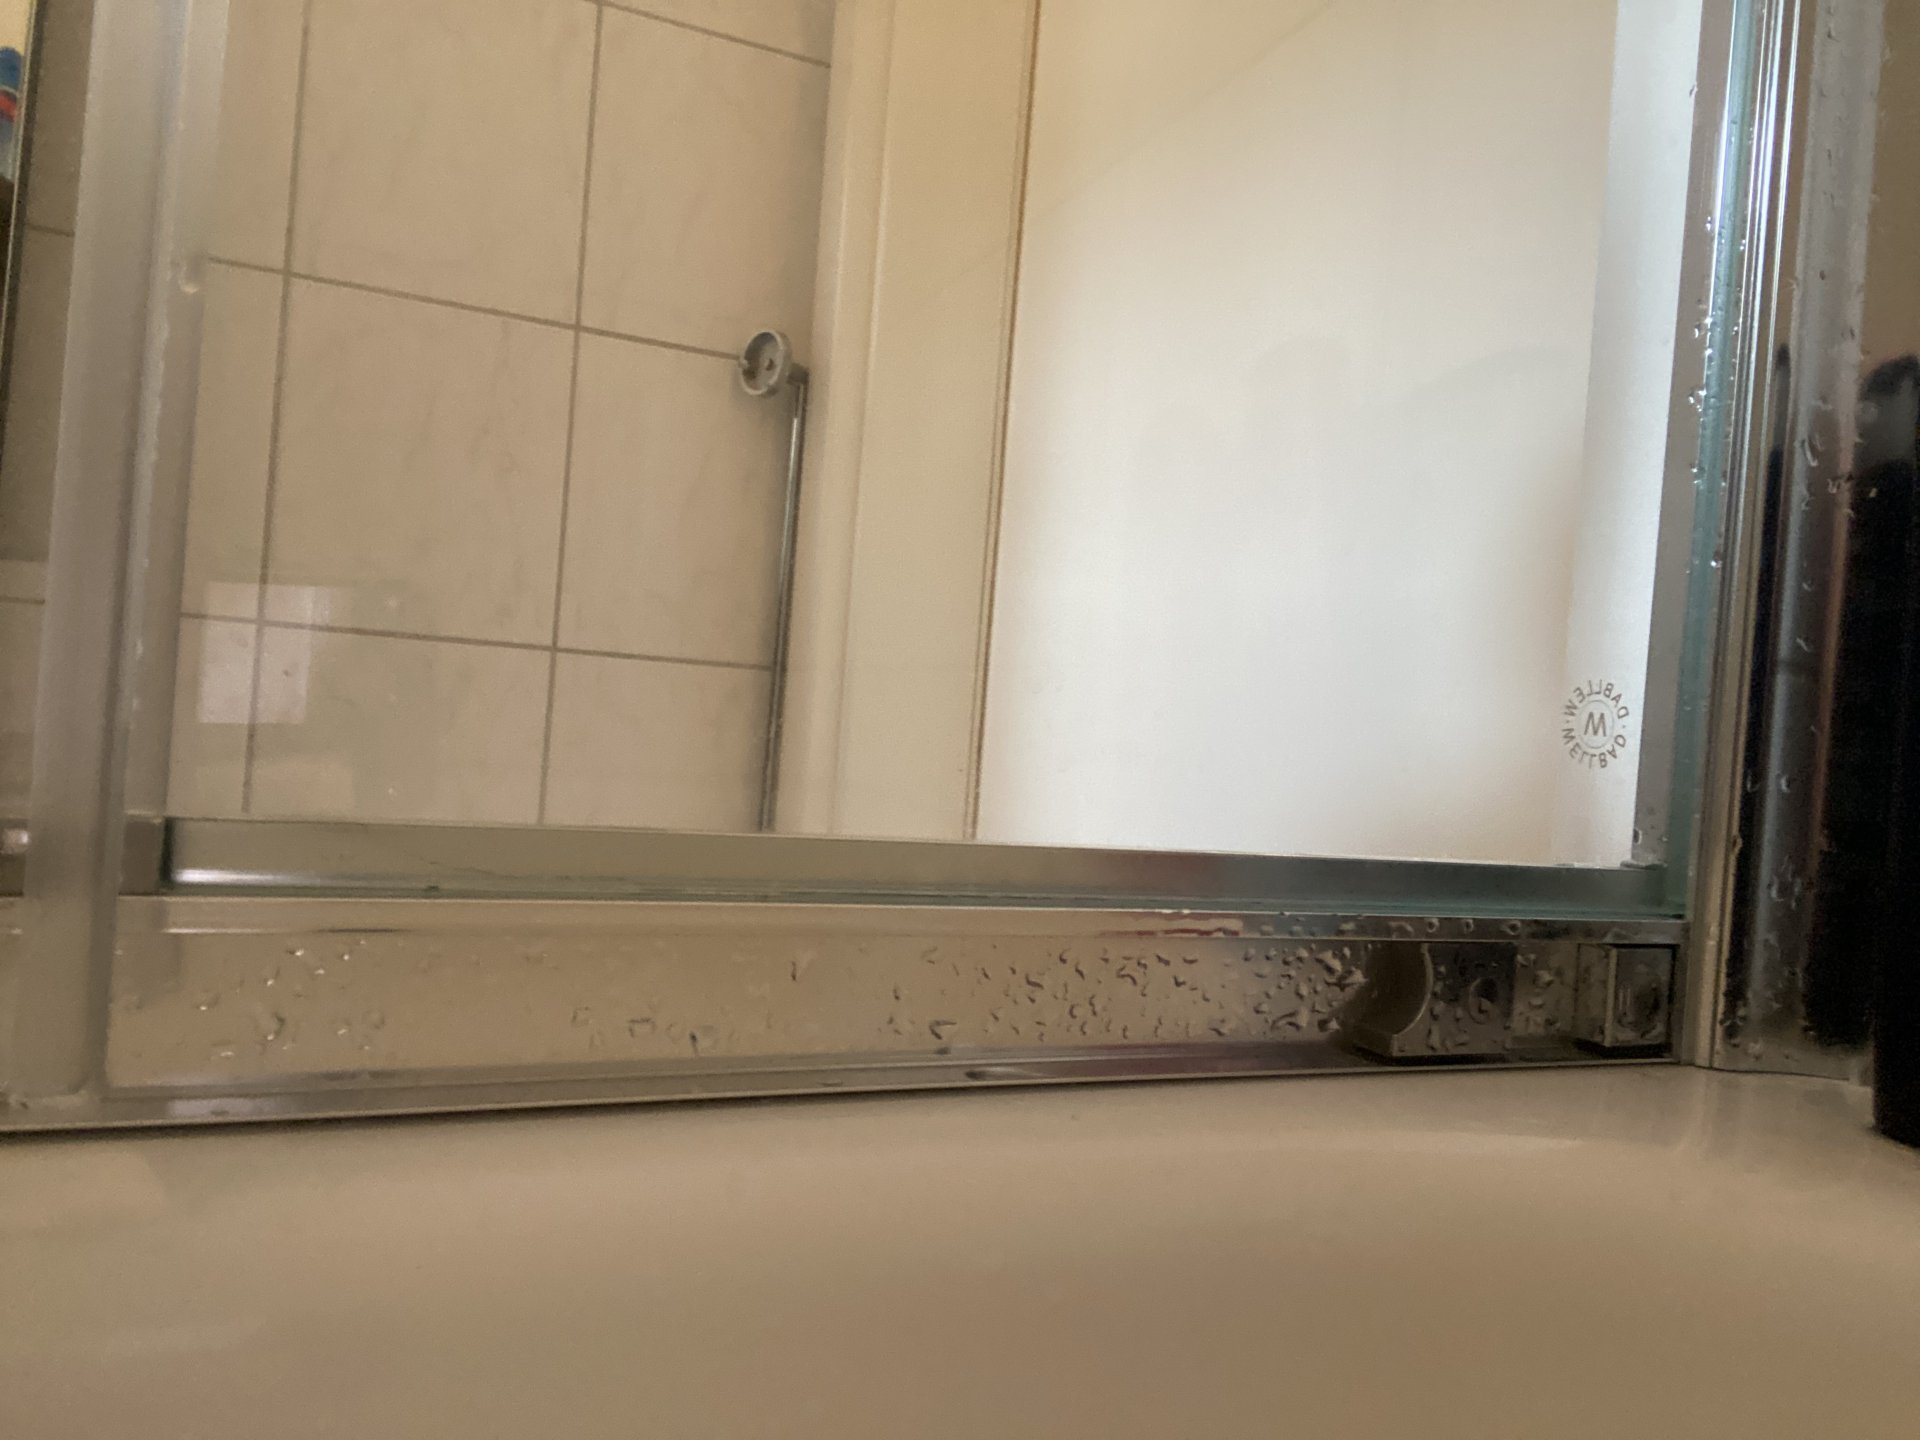 Duschkabine zwischen Glas und Rahmen undicht